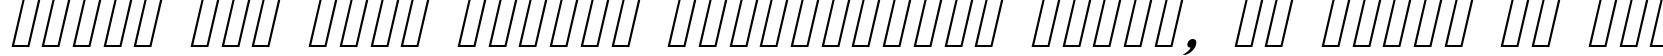 Пример написания шрифтом Cursive Serif текста на русском